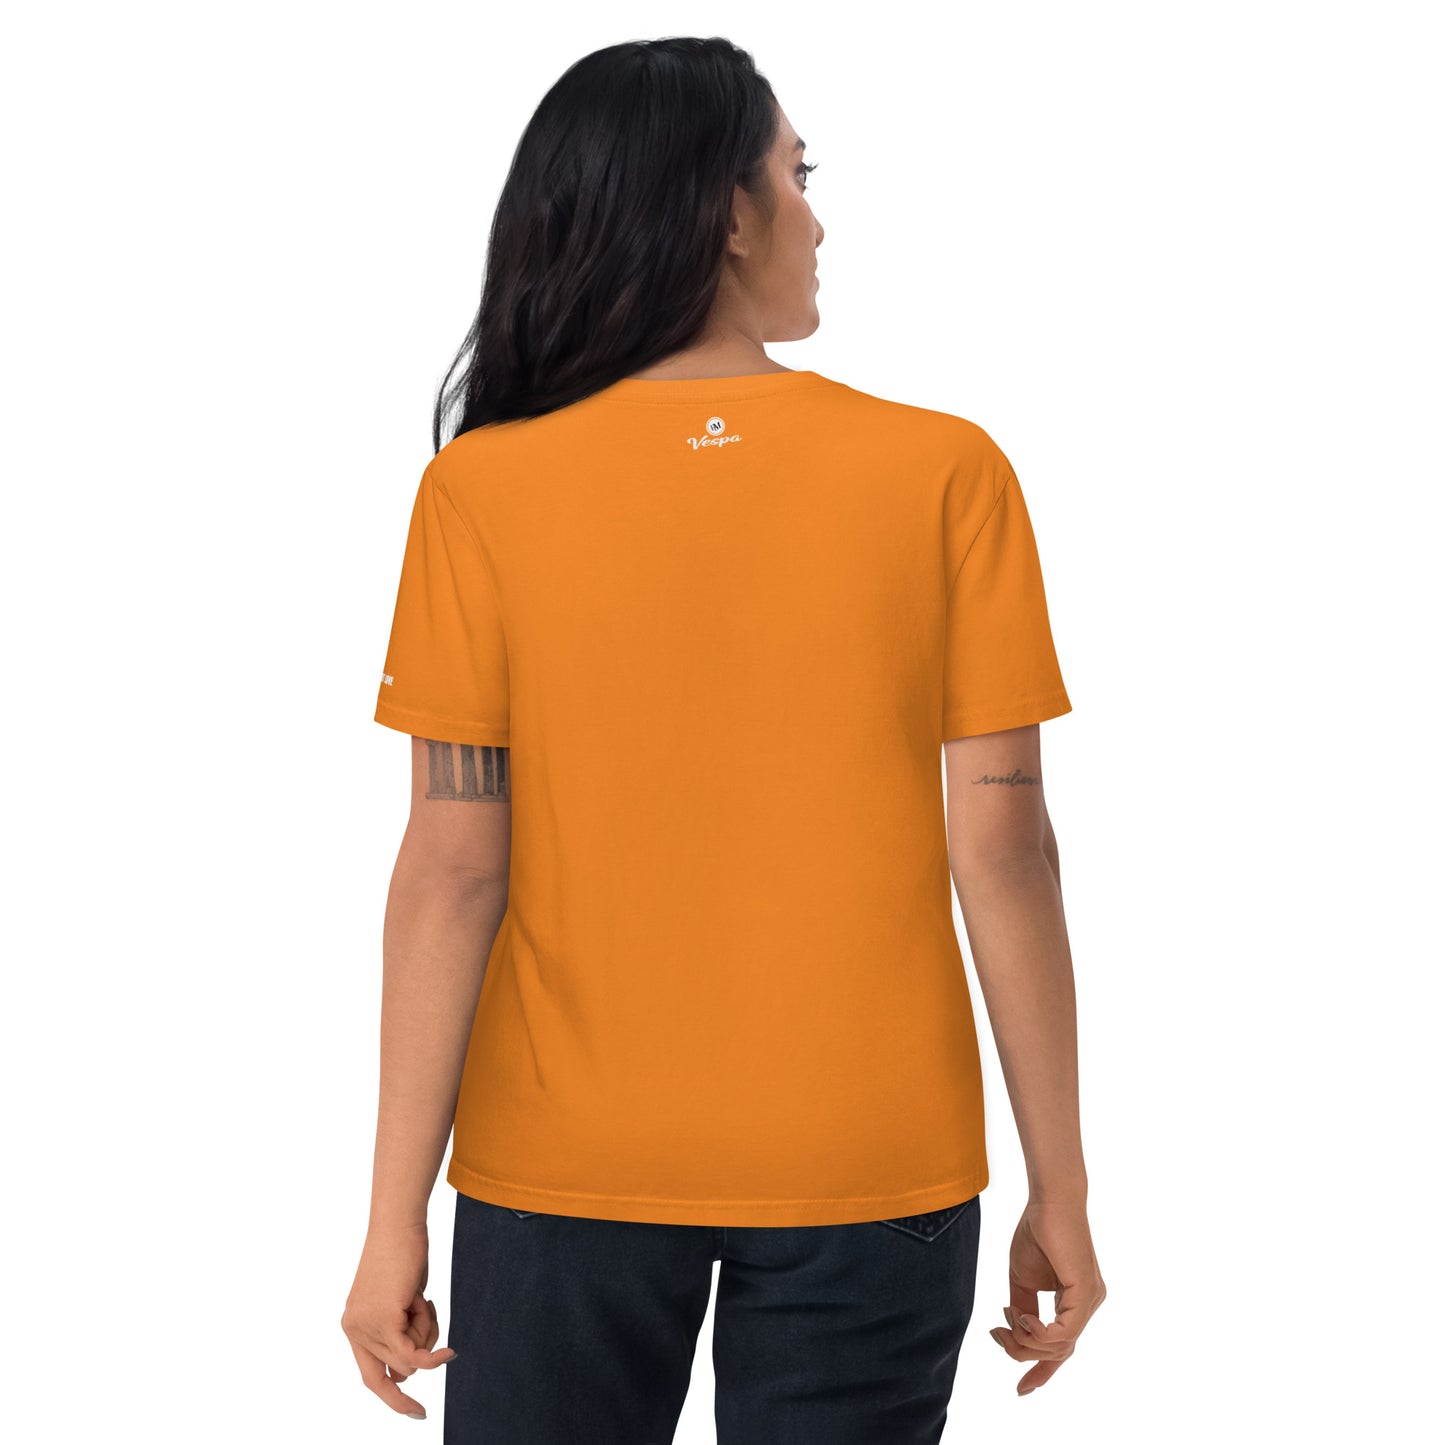 Maglietta in cotone organico unisex T-shirt con stemma Vespa ricamato